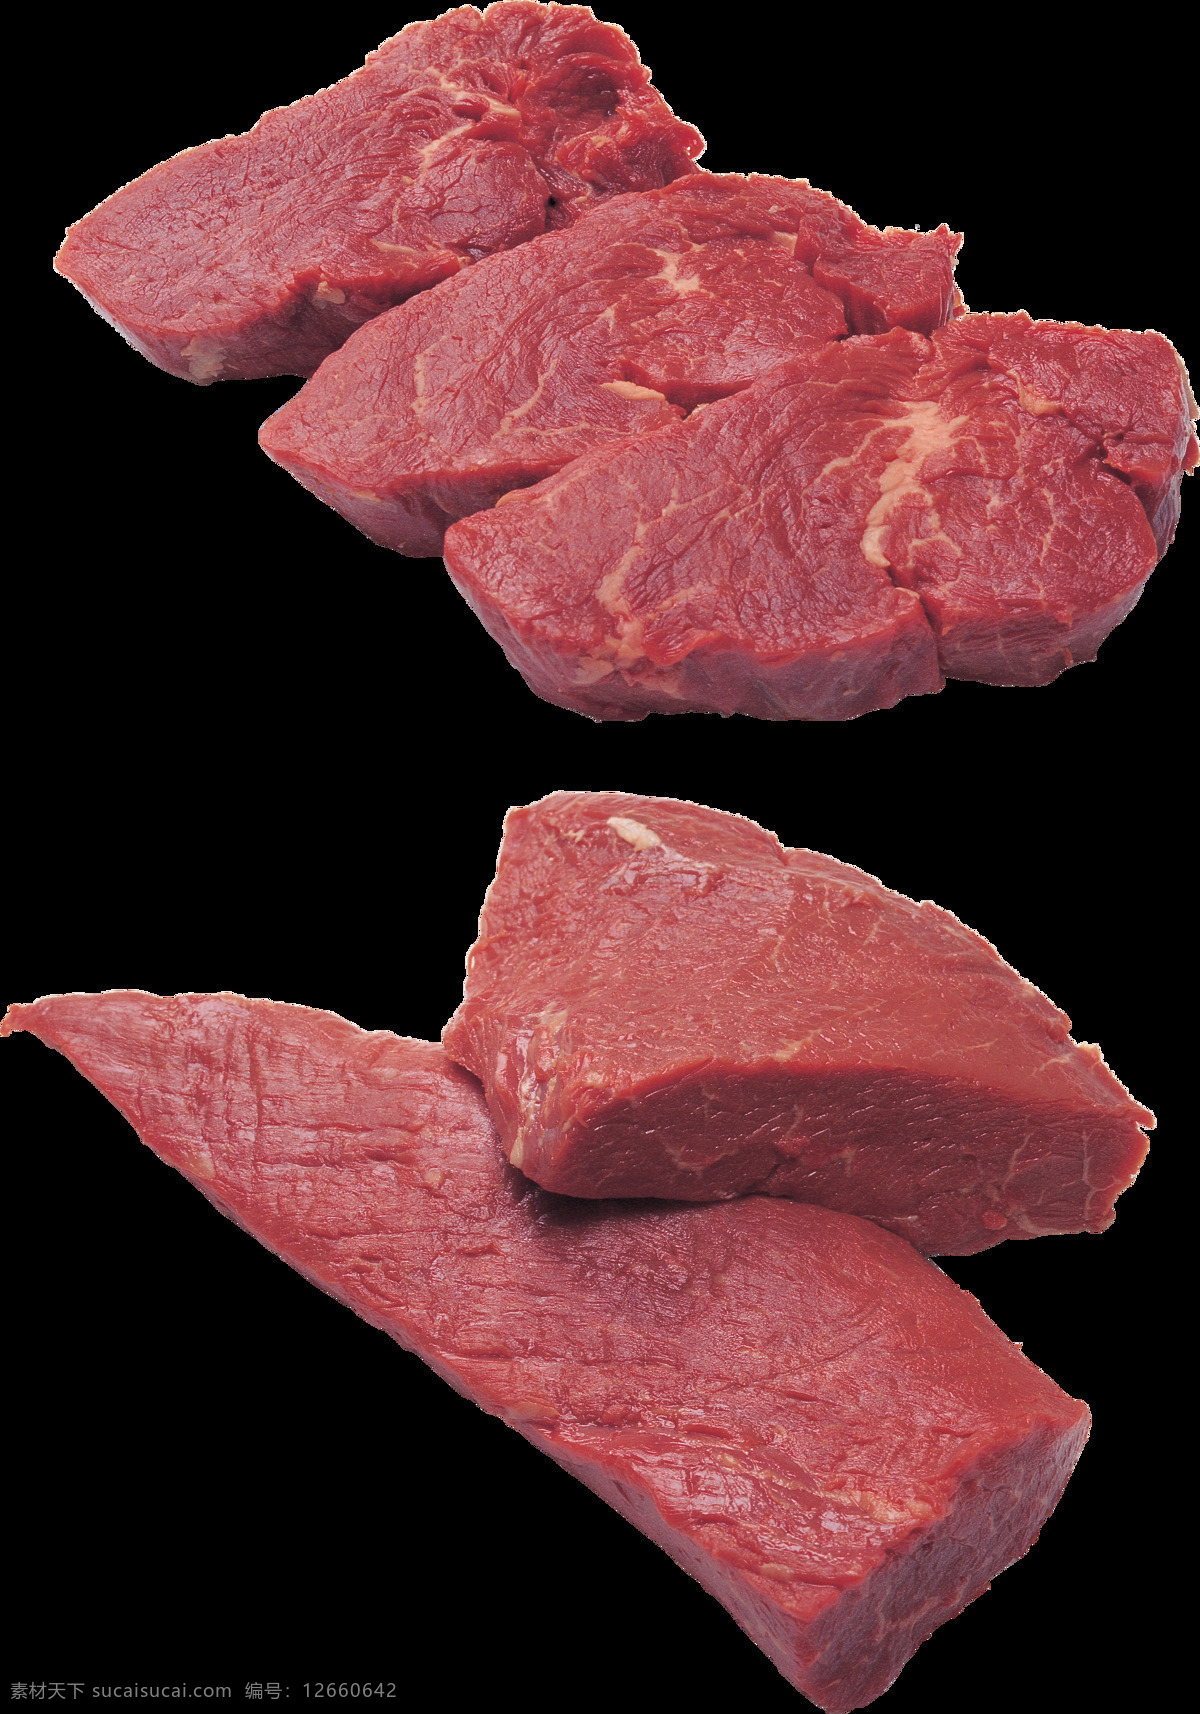 红色 牛肉 免 抠 透明 图 层 五花肉 排骨 羊肉 猪肉 驴肉 马肉 兔子肉 红肉 肉类图片 猪肉图片 羊肉图片 牛肉图片 牛肉素材 羊肉素材 火锅肉 肉片 肉类素材